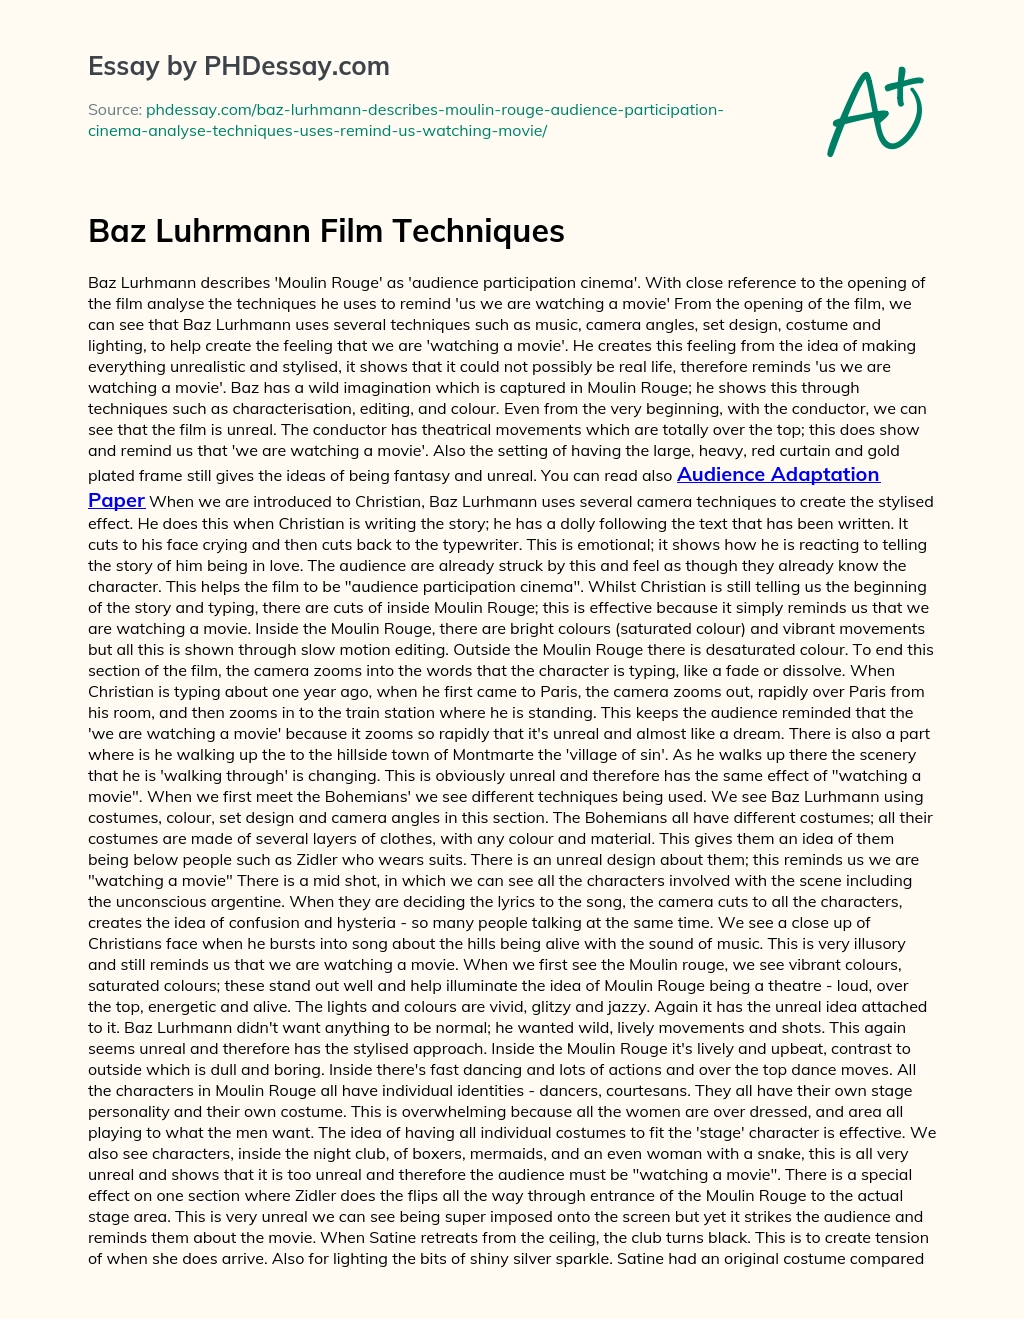 Baz Luhrmann Film Techniques essay